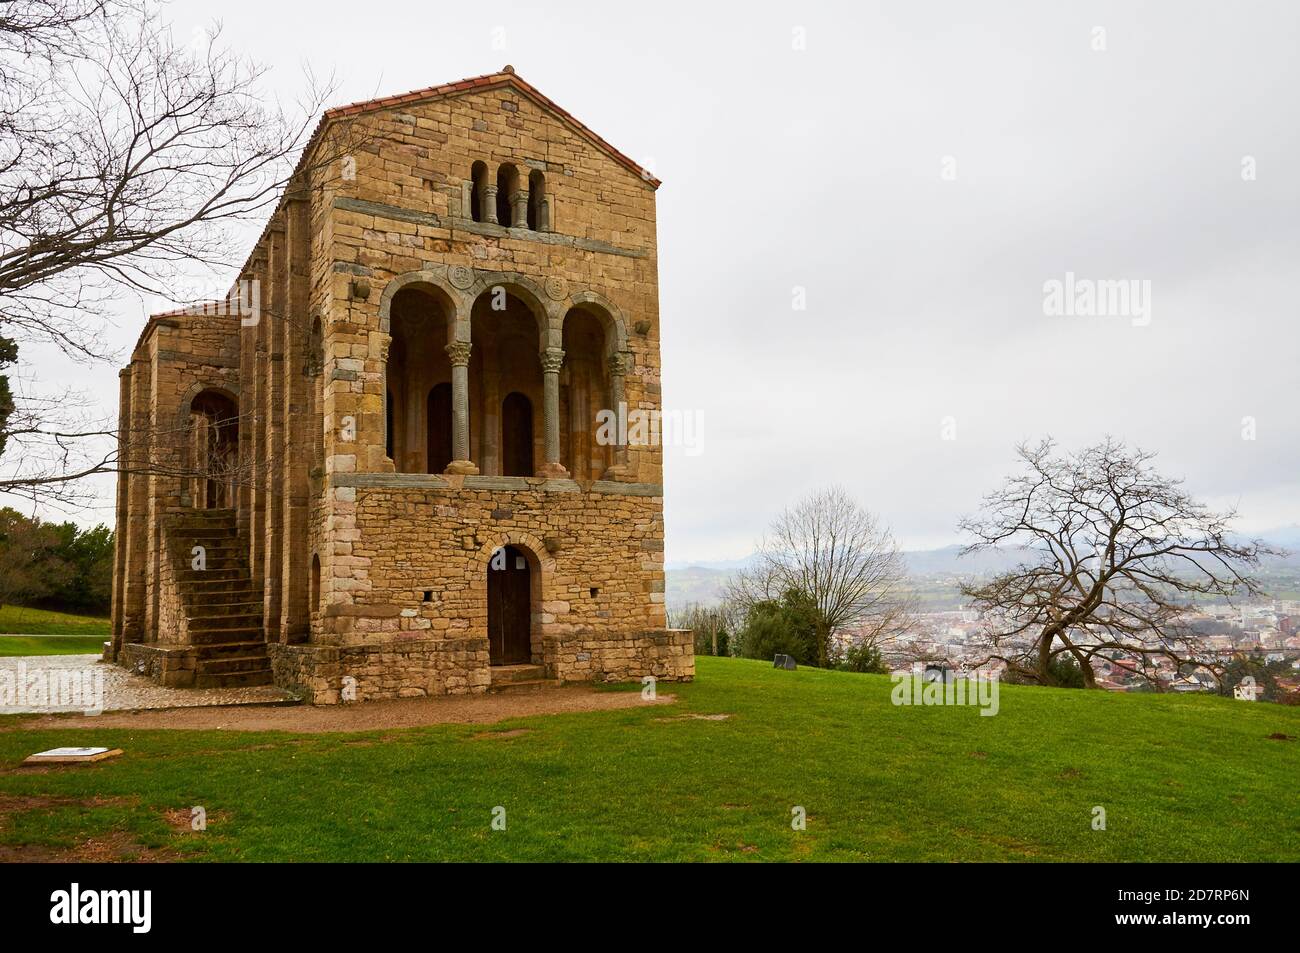 Exterior of the Pre-Romanesque IX century church of St Mary at Mount Naranco in a rainy cloudy day (Santa María del Naranco, Oviedo, Asturias, Spain) Stock Photo